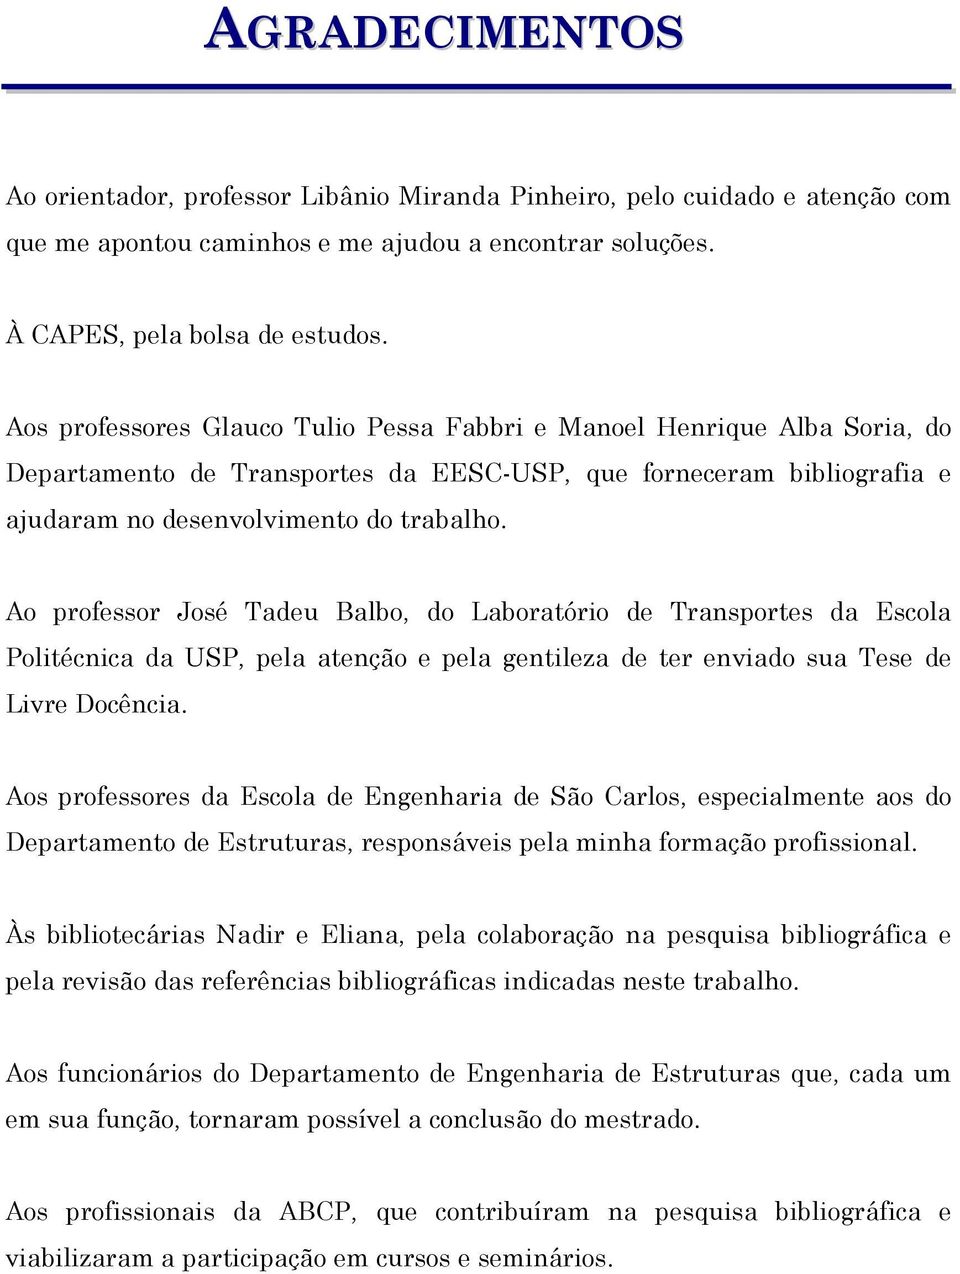 Ao professor José Tadeu Balbo, do Laboratório de Transportes da Escola Politécnica da USP, pela atenção e pela gentileza de ter enviado sua Tese de Livre Docência.